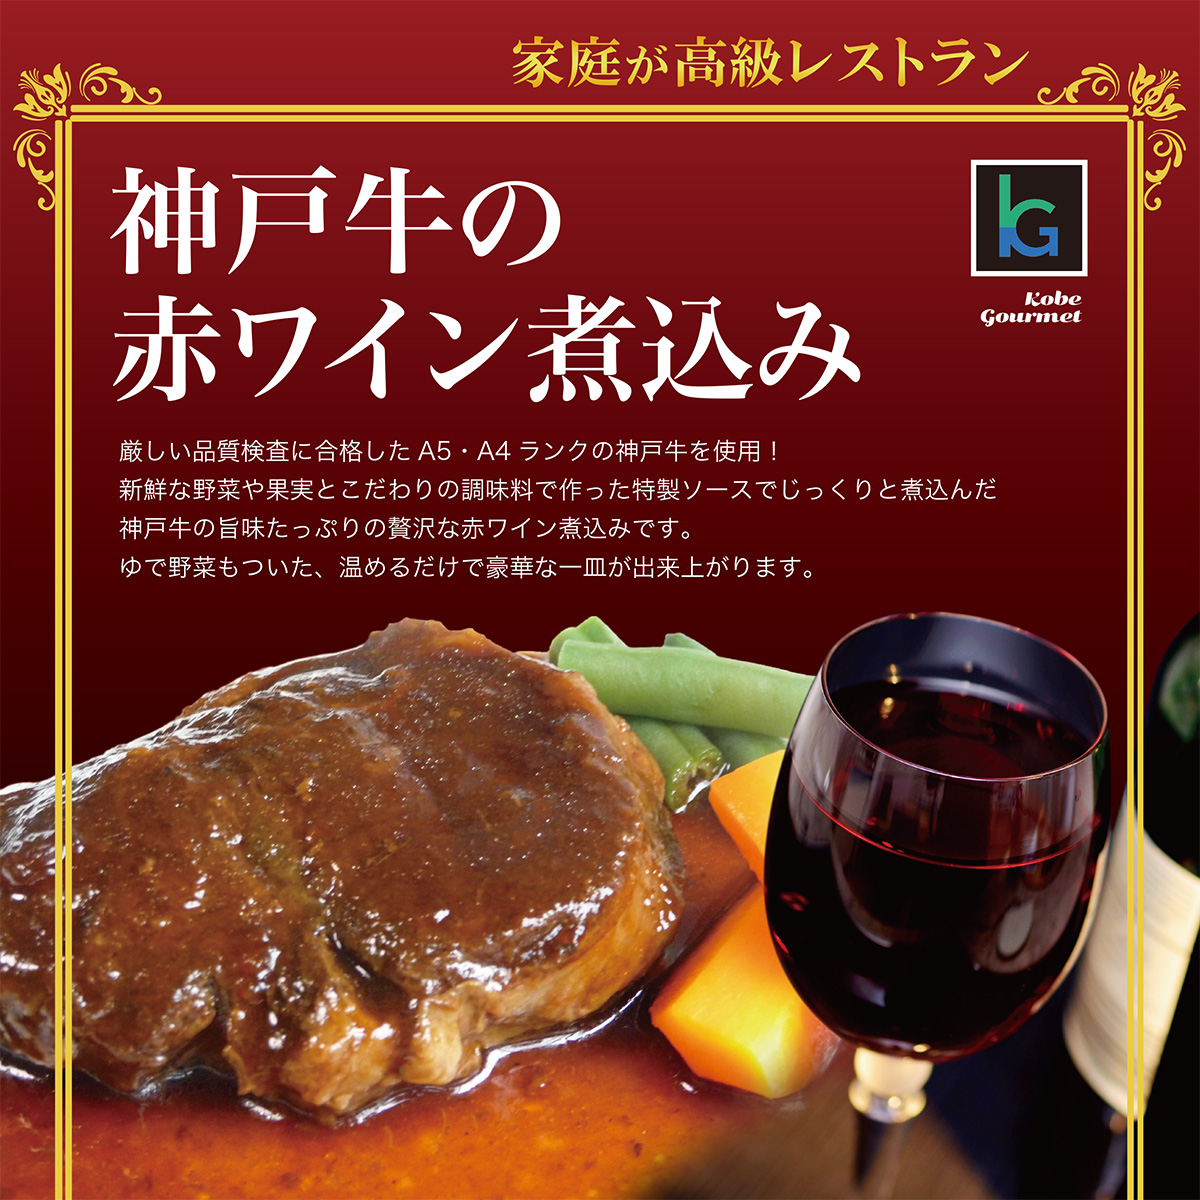 ワインと並んだ神戸牛の赤ワイン煮込み